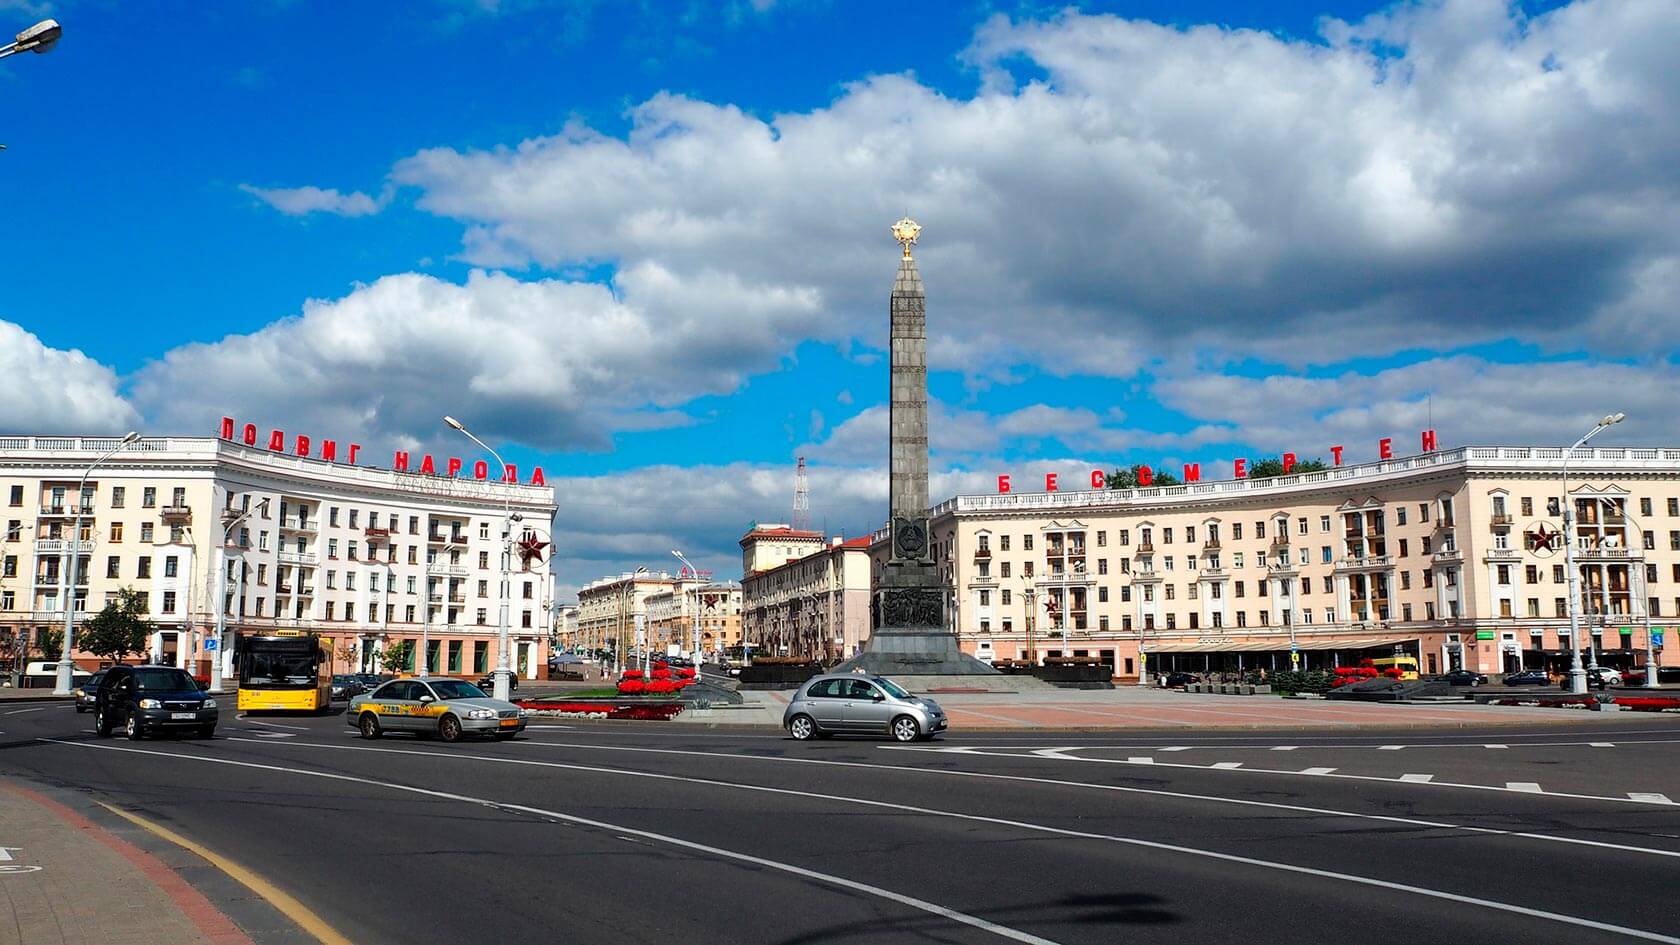 Как развивается белорусская экономика в рамках ЕАЭС? - Взгляд из Минска